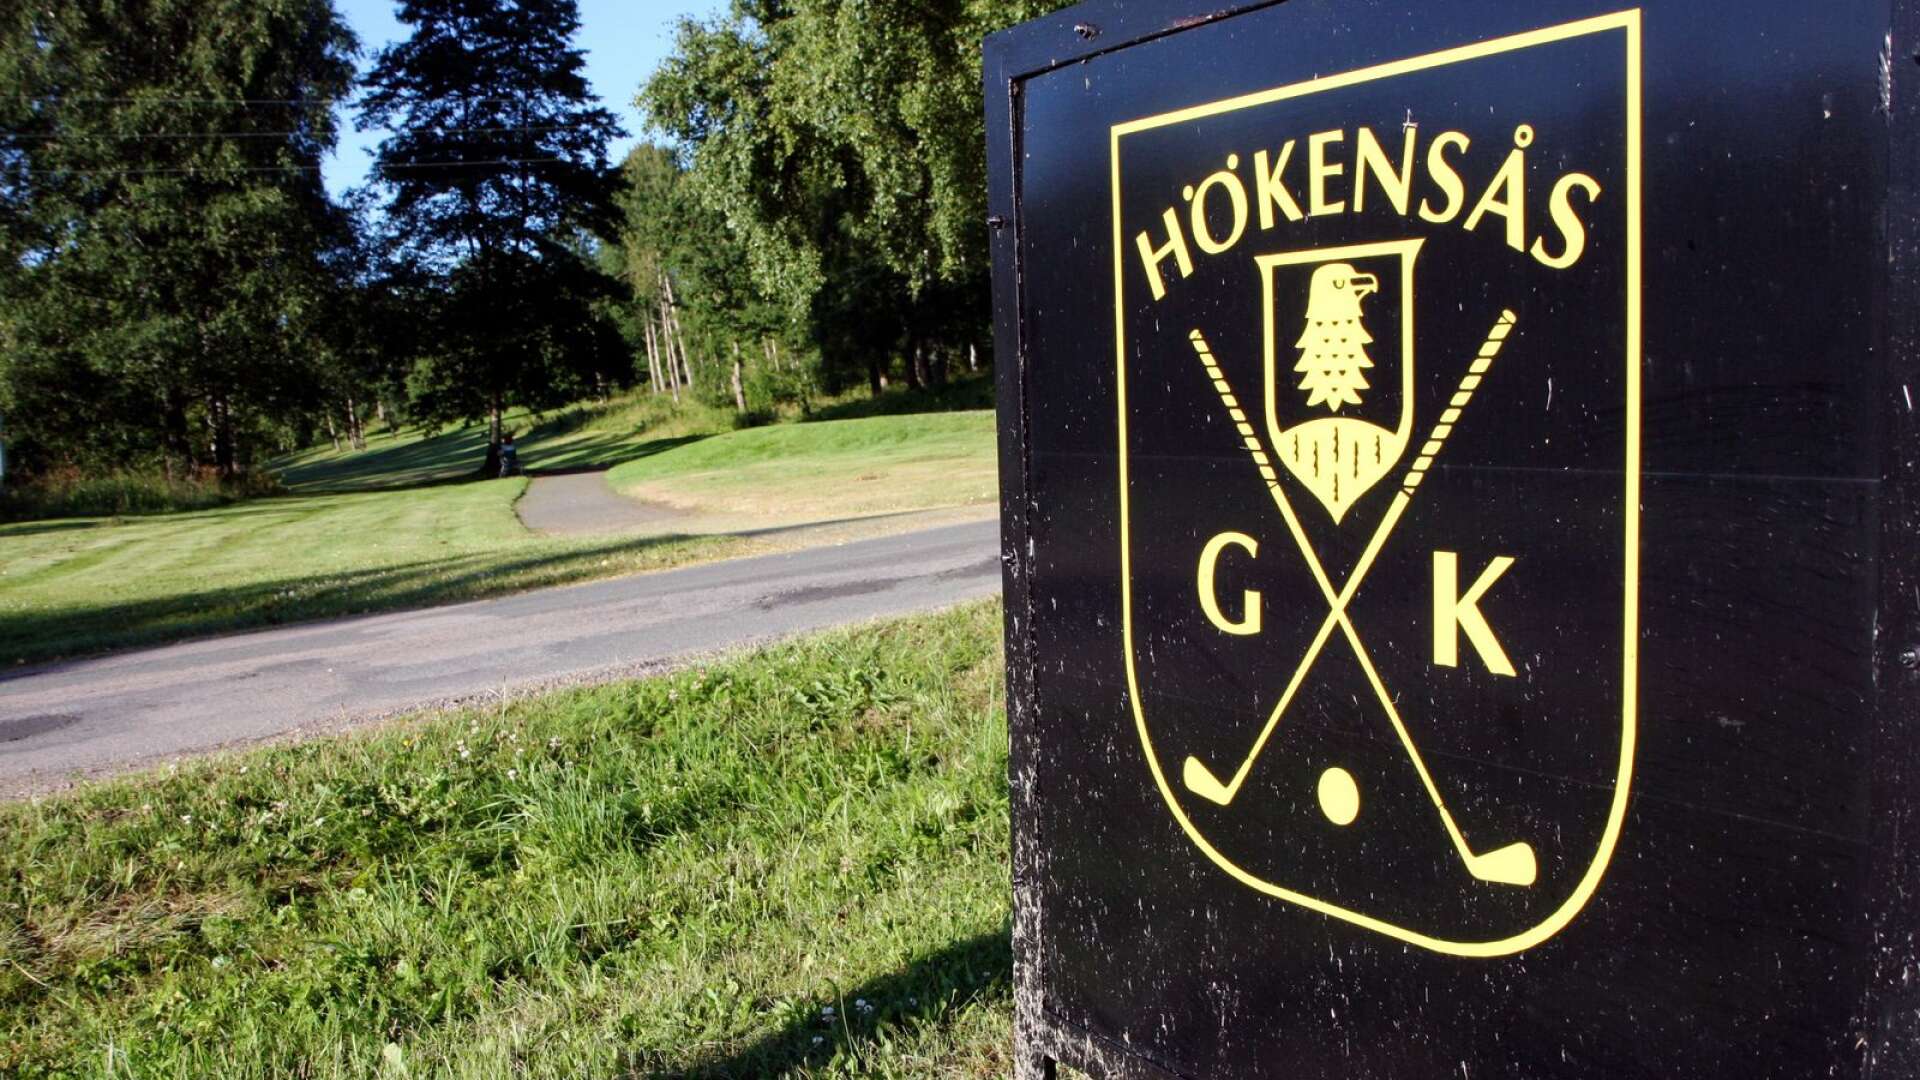 Hökensås GK ställer in sitt vårårsmöte men planerar att genomföra elittävlingen Hjo s Open i slutet av april.